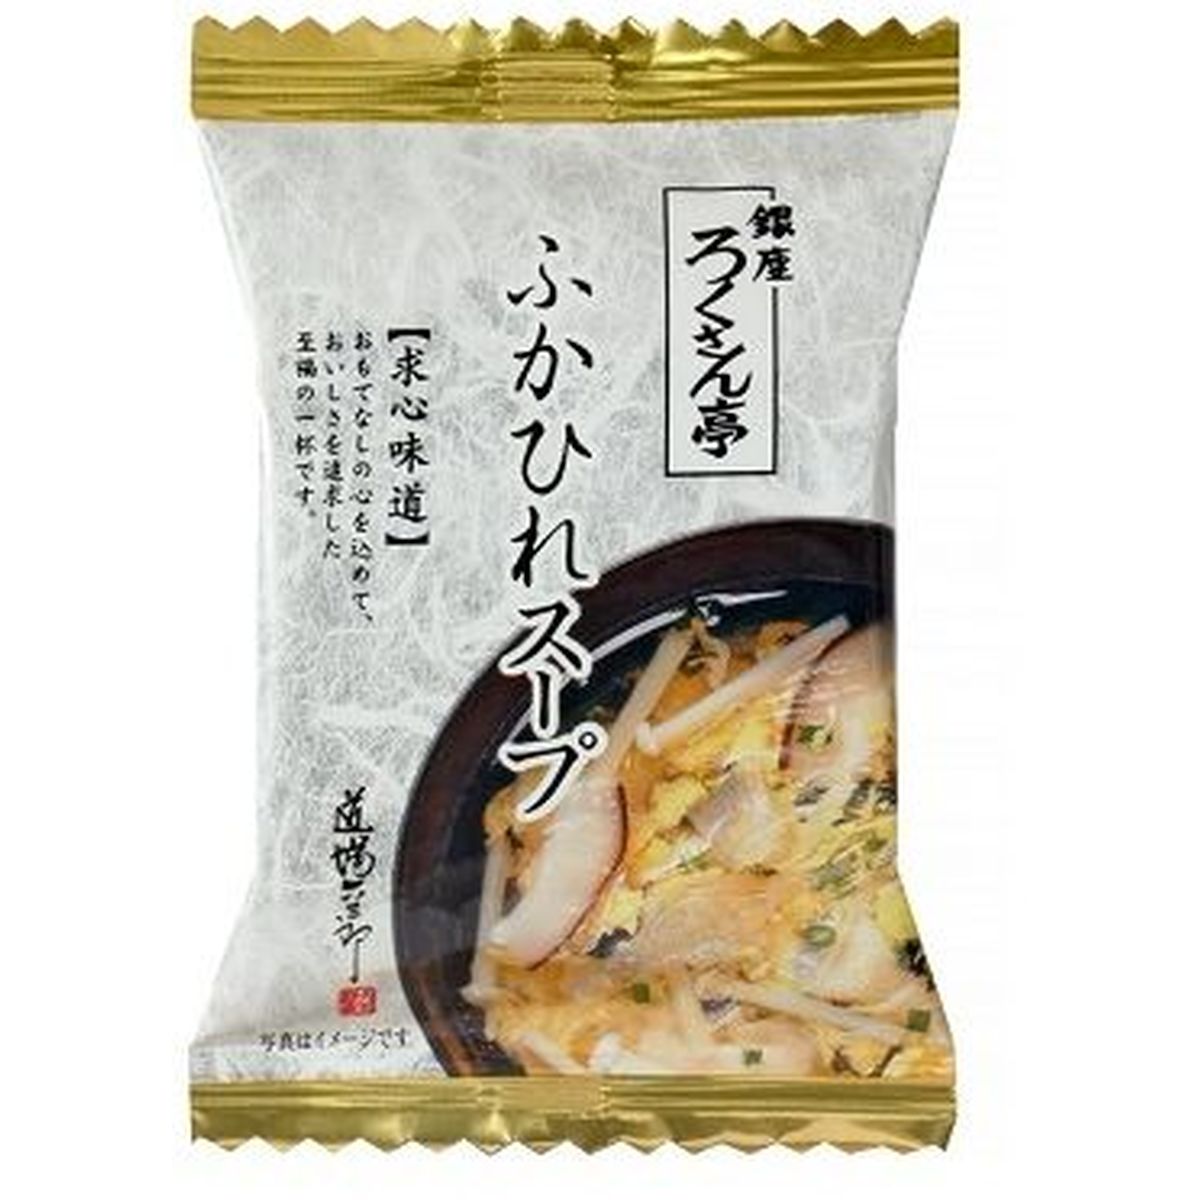 【10個入リ】トップ卵 ロクサン亭 フカヒレスープ 7.5g